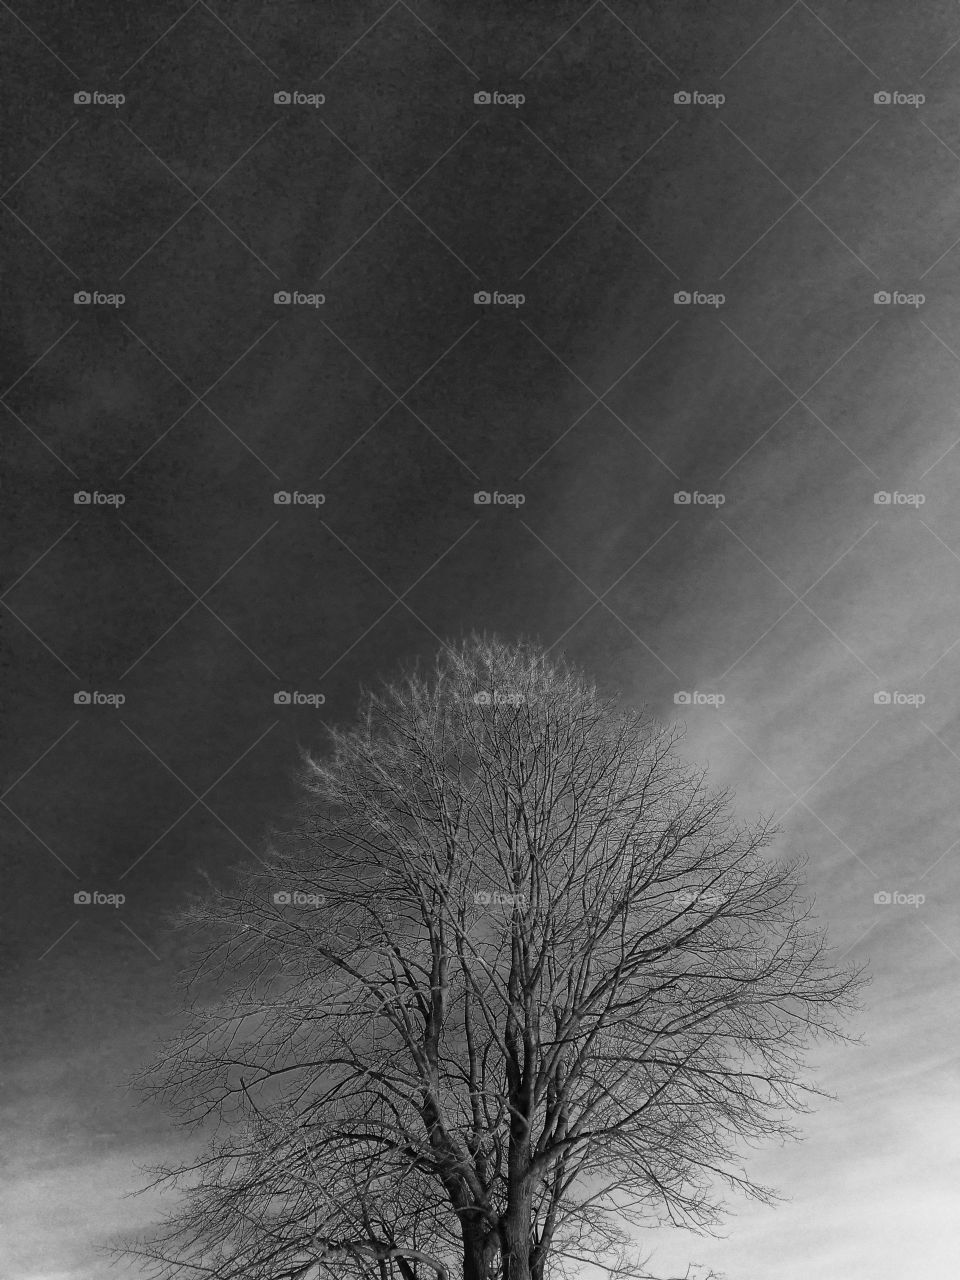 Winter trees in the dark sky